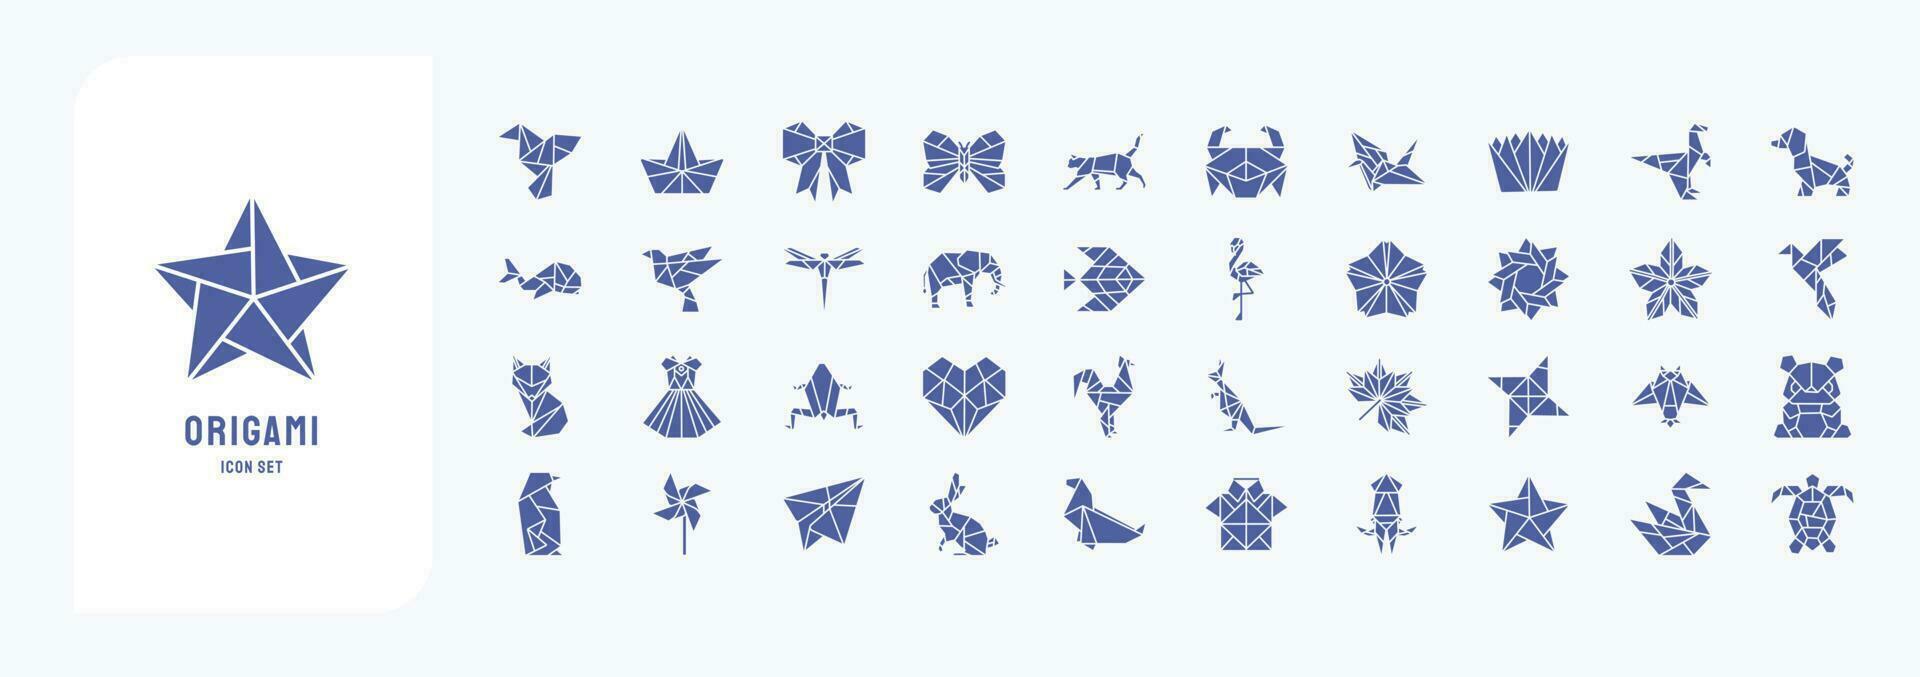 colección de íconos relacionado a origami, incluso íconos me gusta pájaro, bote, mariposa, gato y más vector